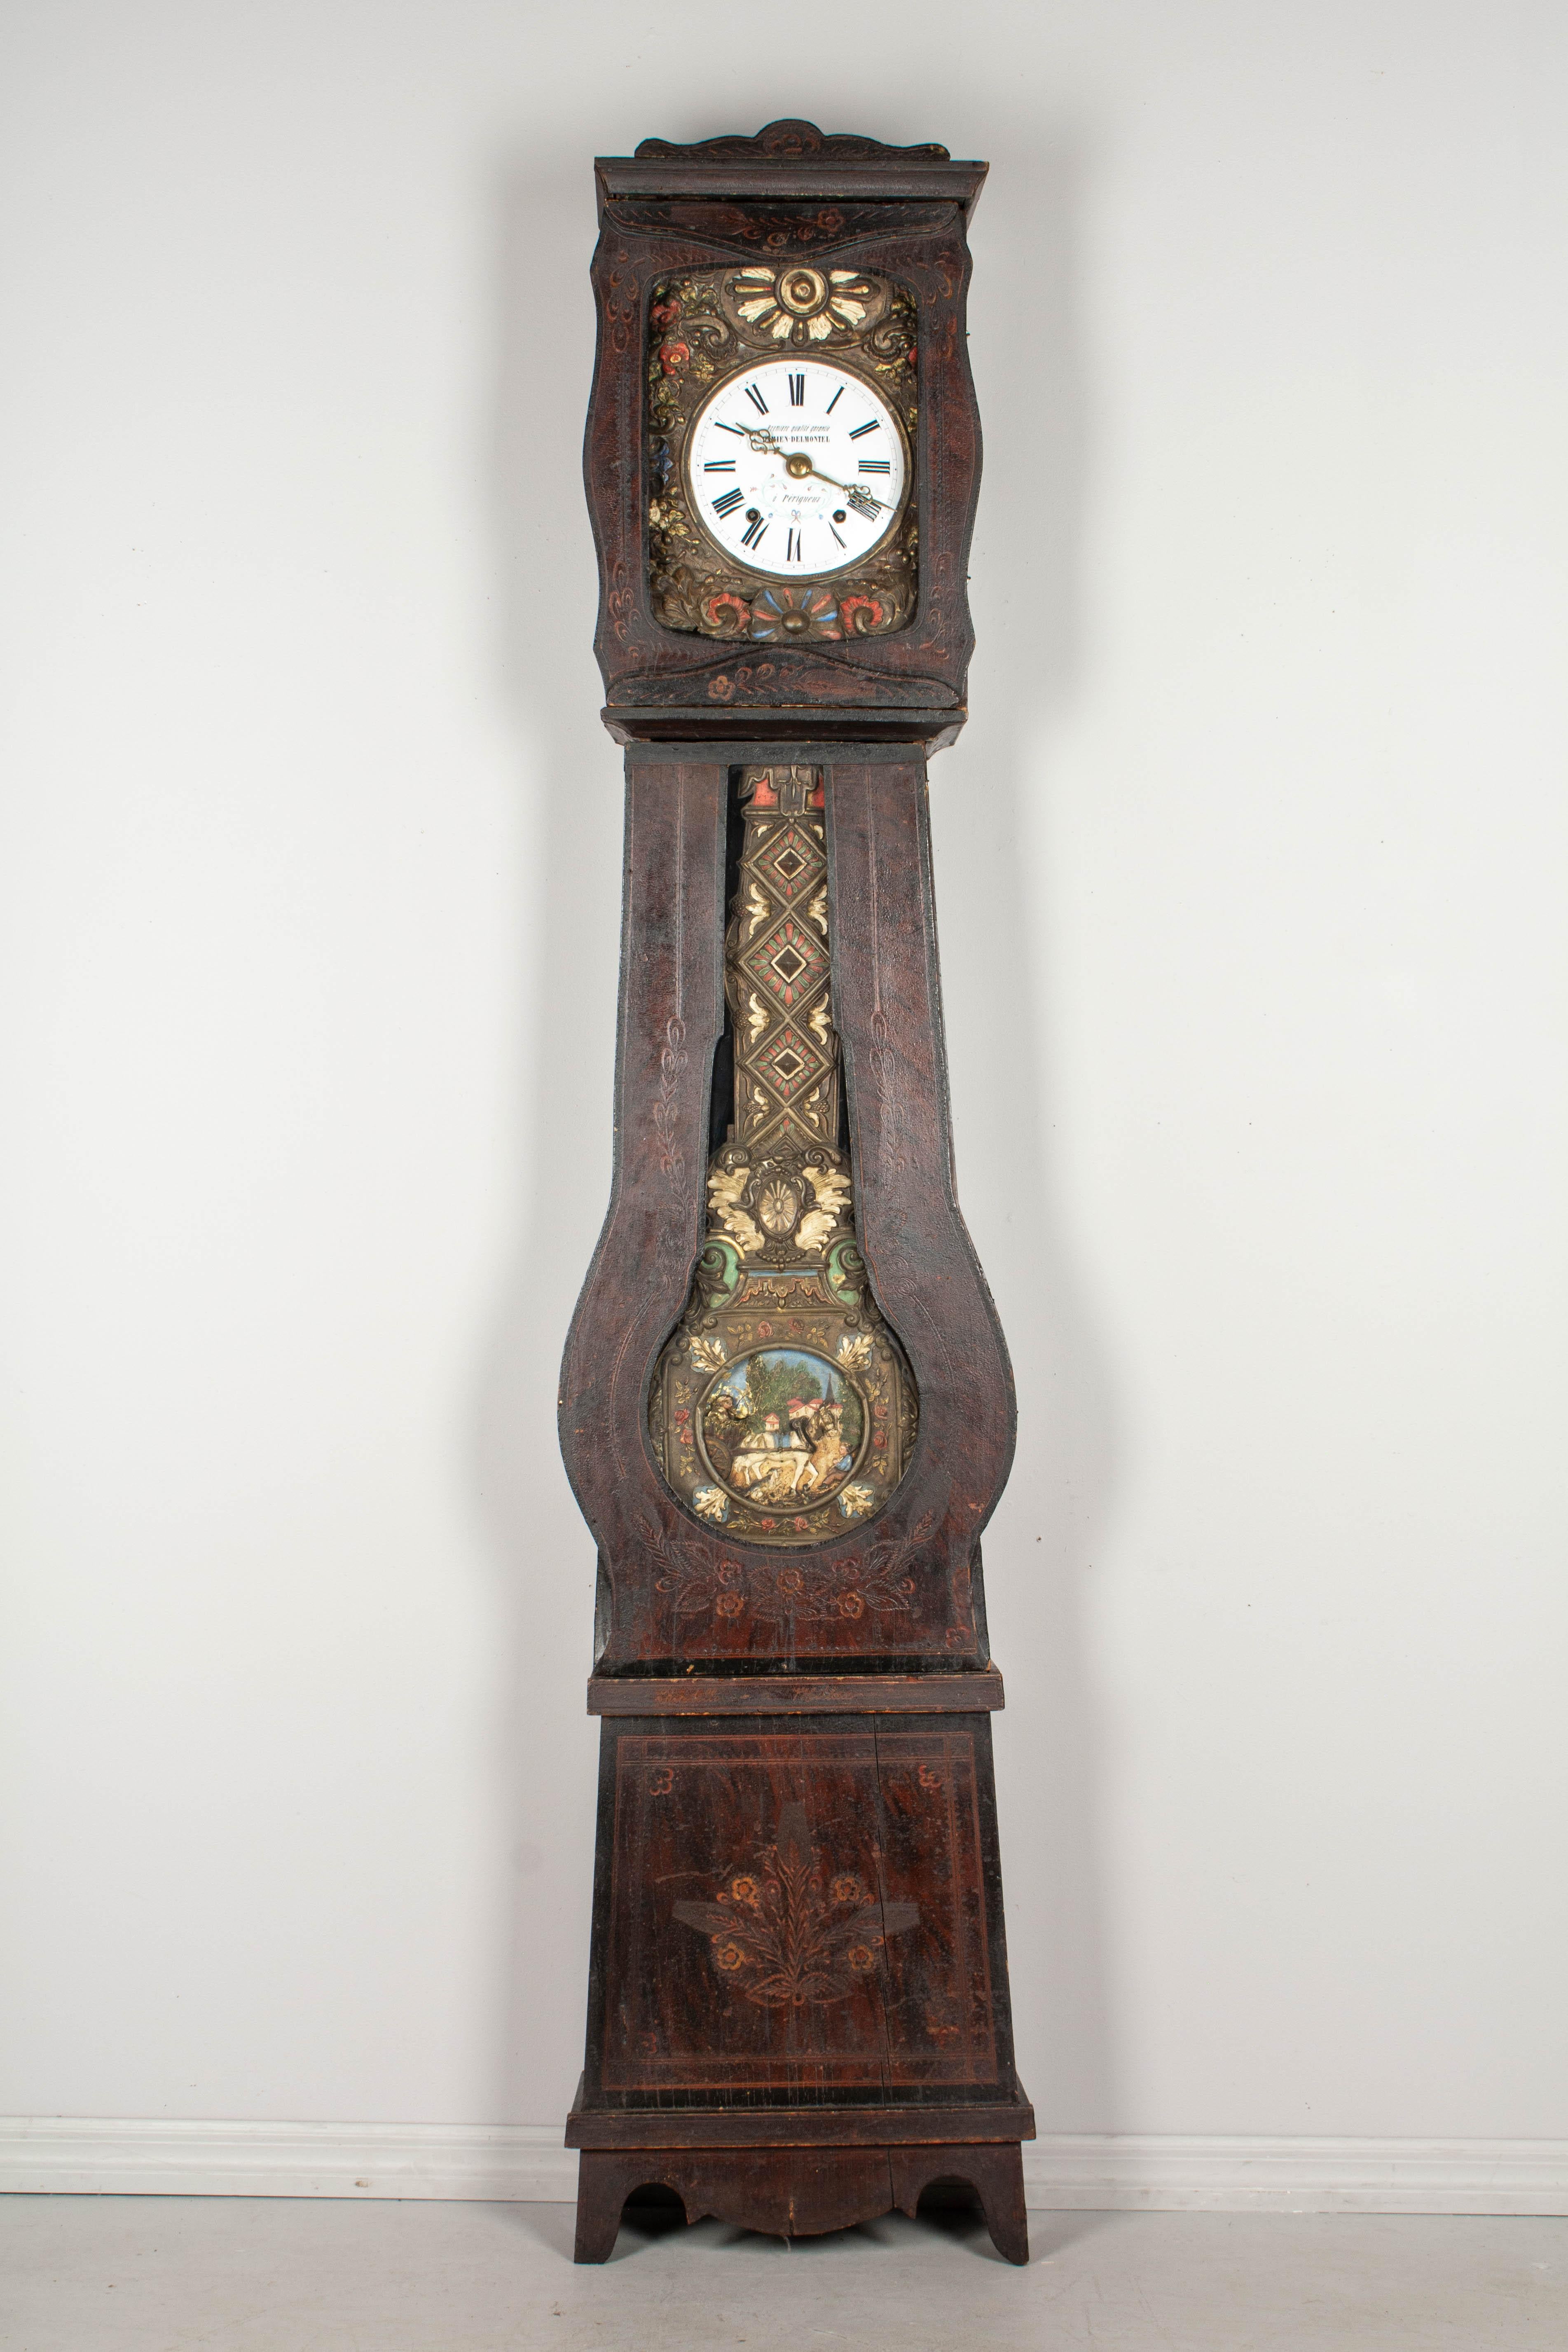 Une comtoise, ou horloge de grand-père, de style français, avec un boîtier en pin peint en polychromie et un pendule en laiton embossé. Mouvement Morbier original de sept jours, nettoyé professionnellement et en état de marche, avec un cadran en